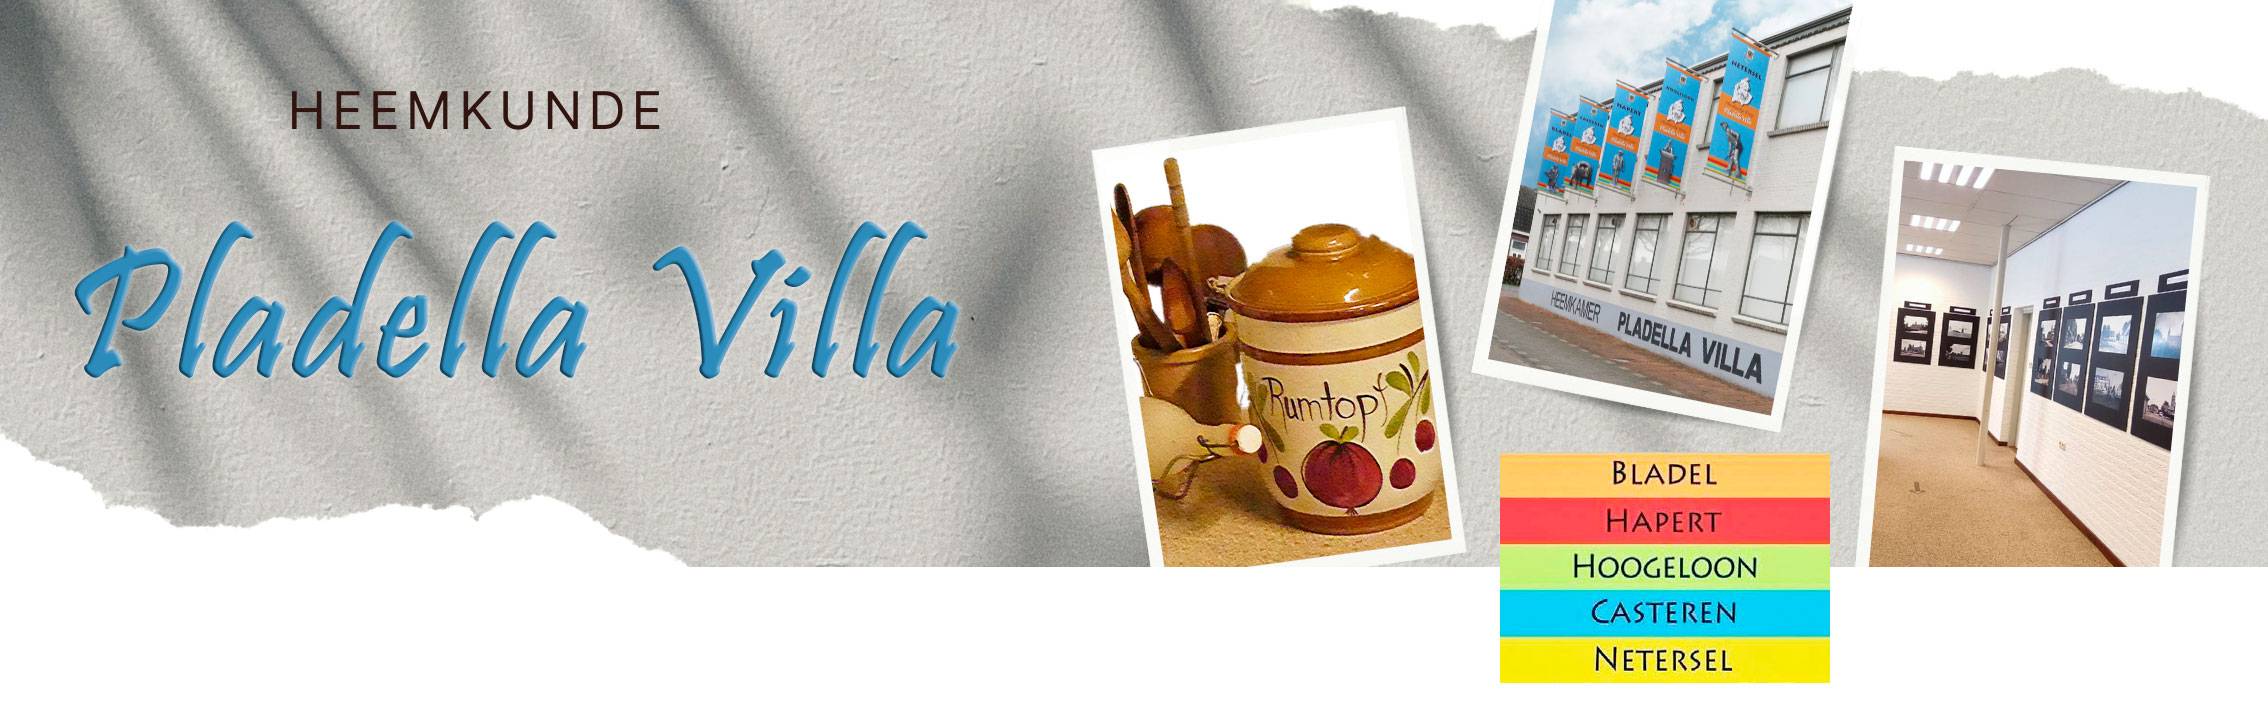 Heemkunde-Pladella-Villa-webbanner